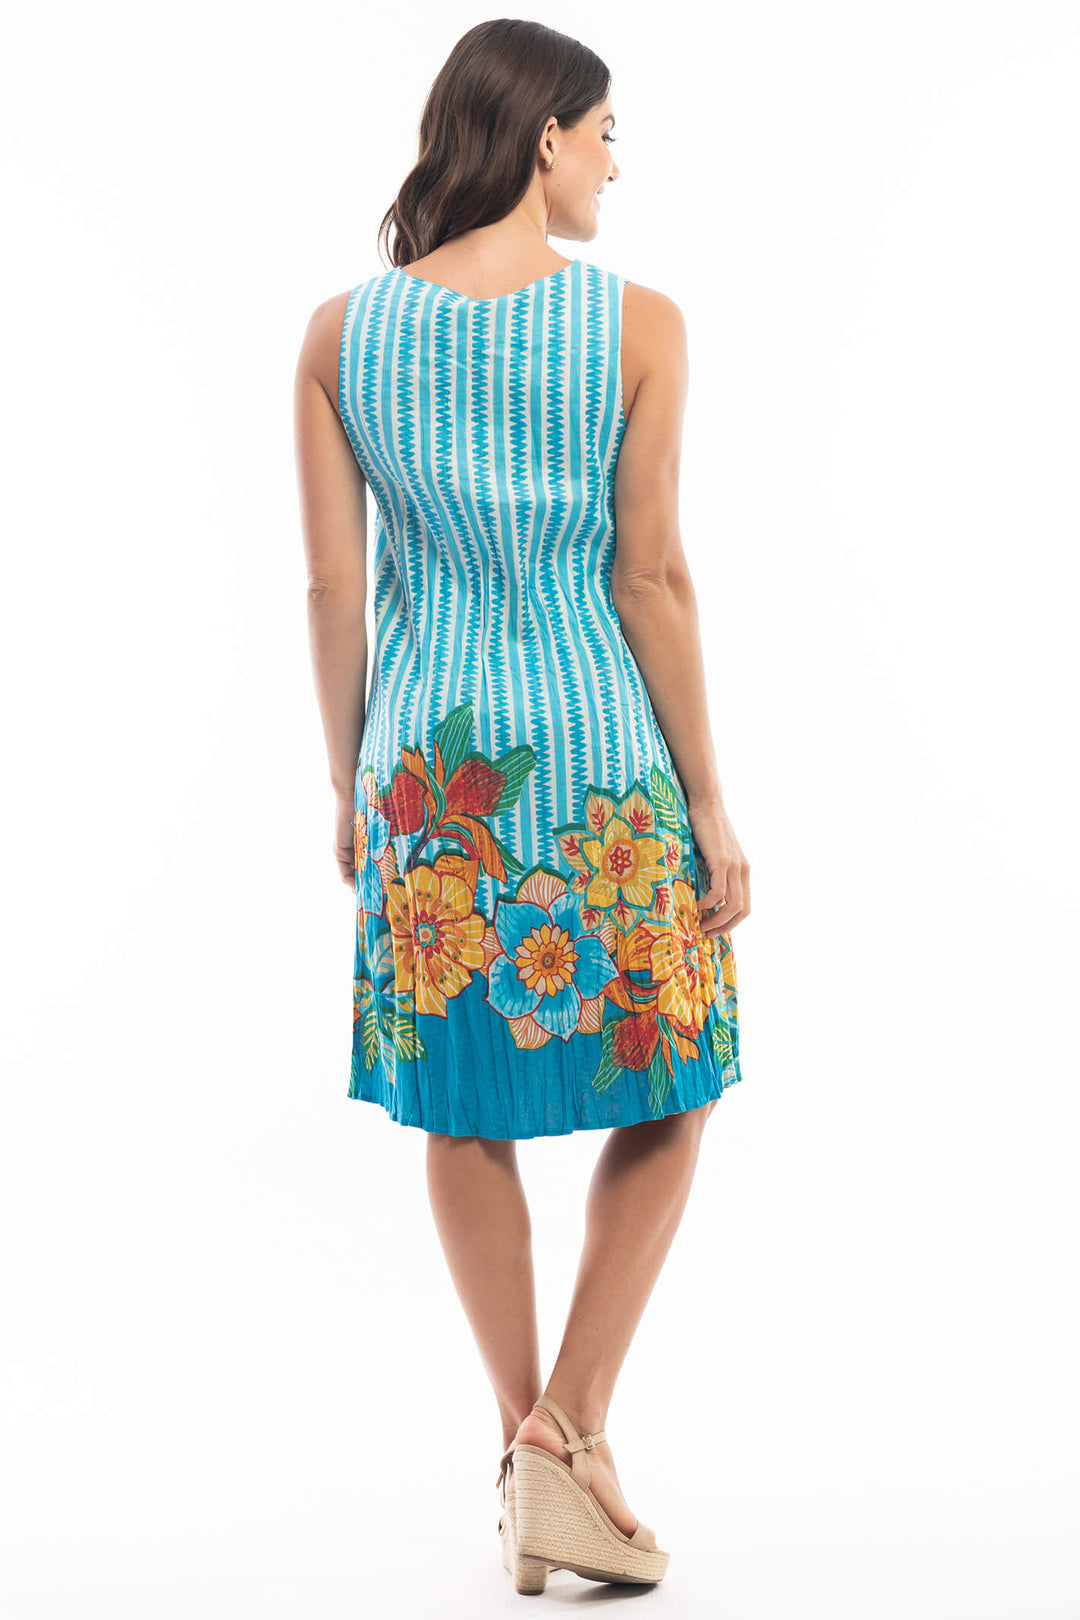 Orientique 6125 Blue Marsaxlokk Reversible Beach Dress - Experience Boutique